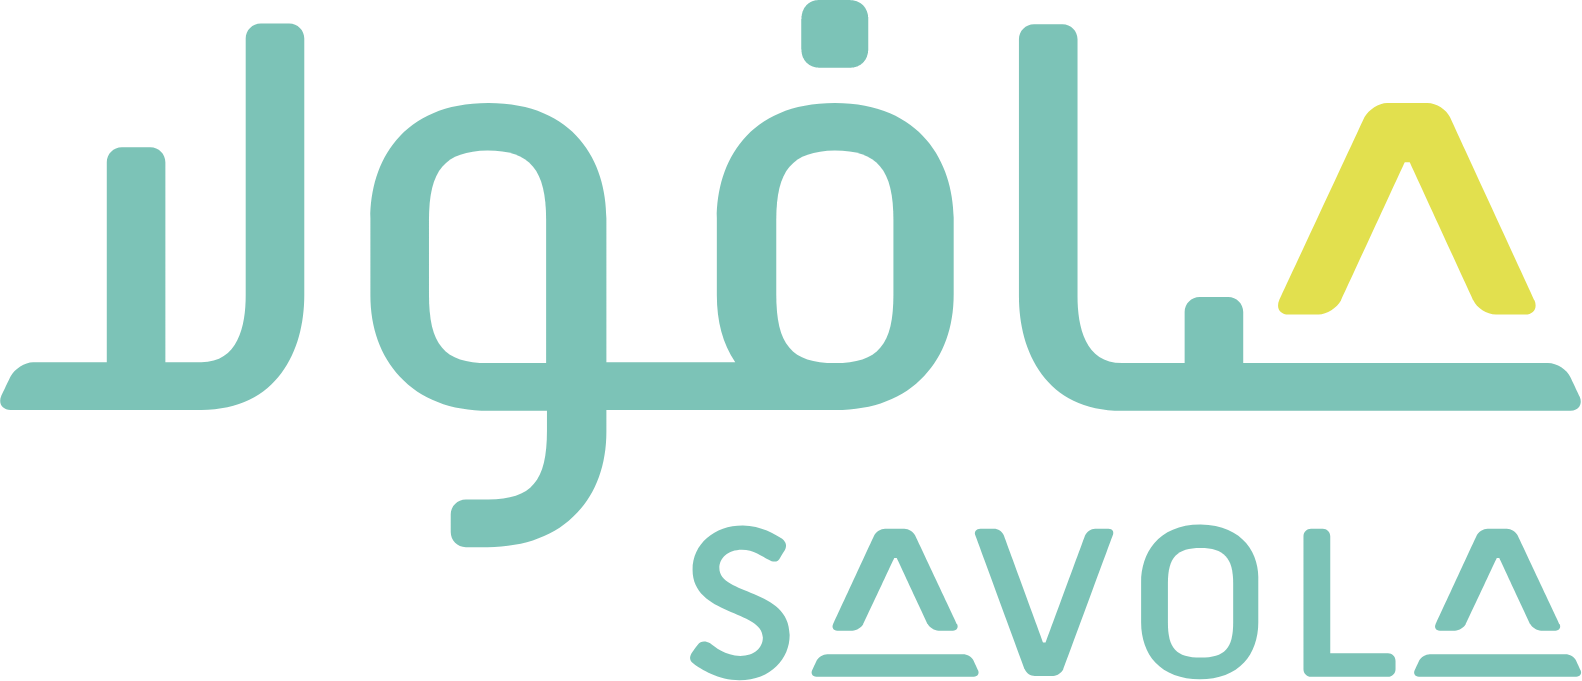 Savola Group logo grand pour les fonds sombres (PNG transparent)